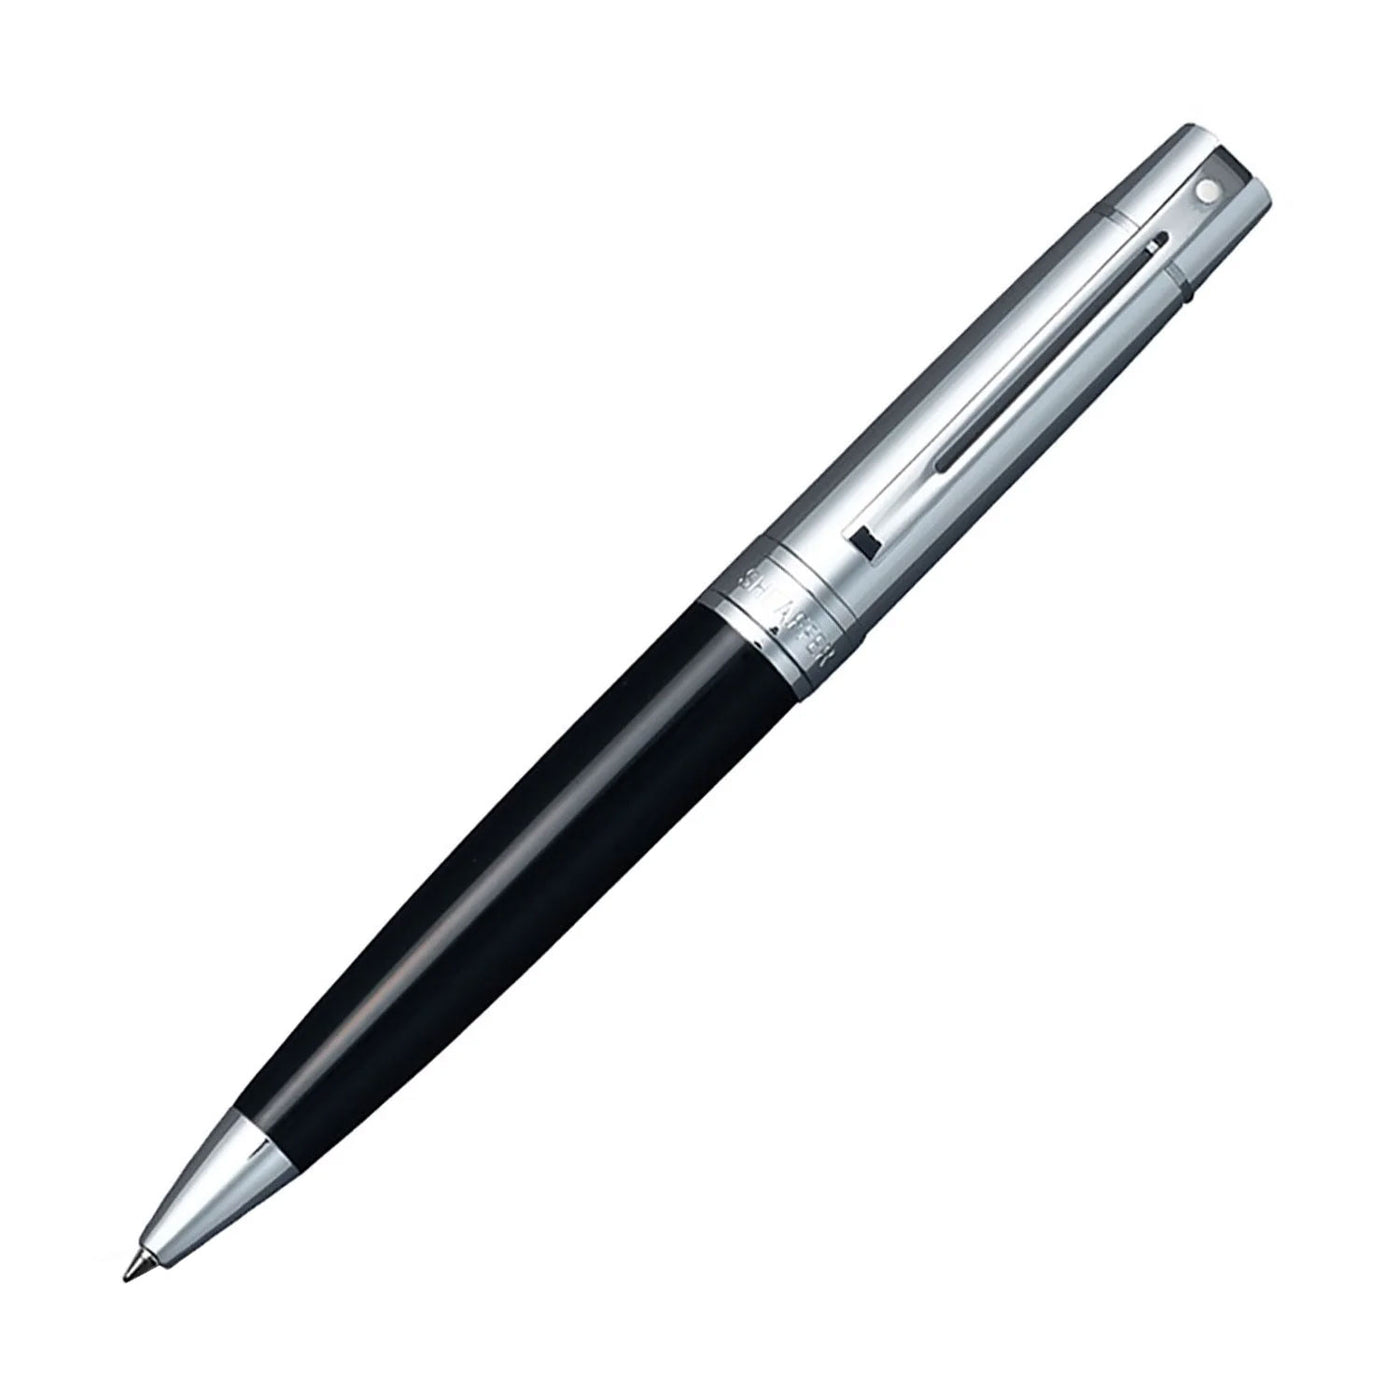 Sheaffer 300 Ball Pen - Glossy Black & Chrome 1